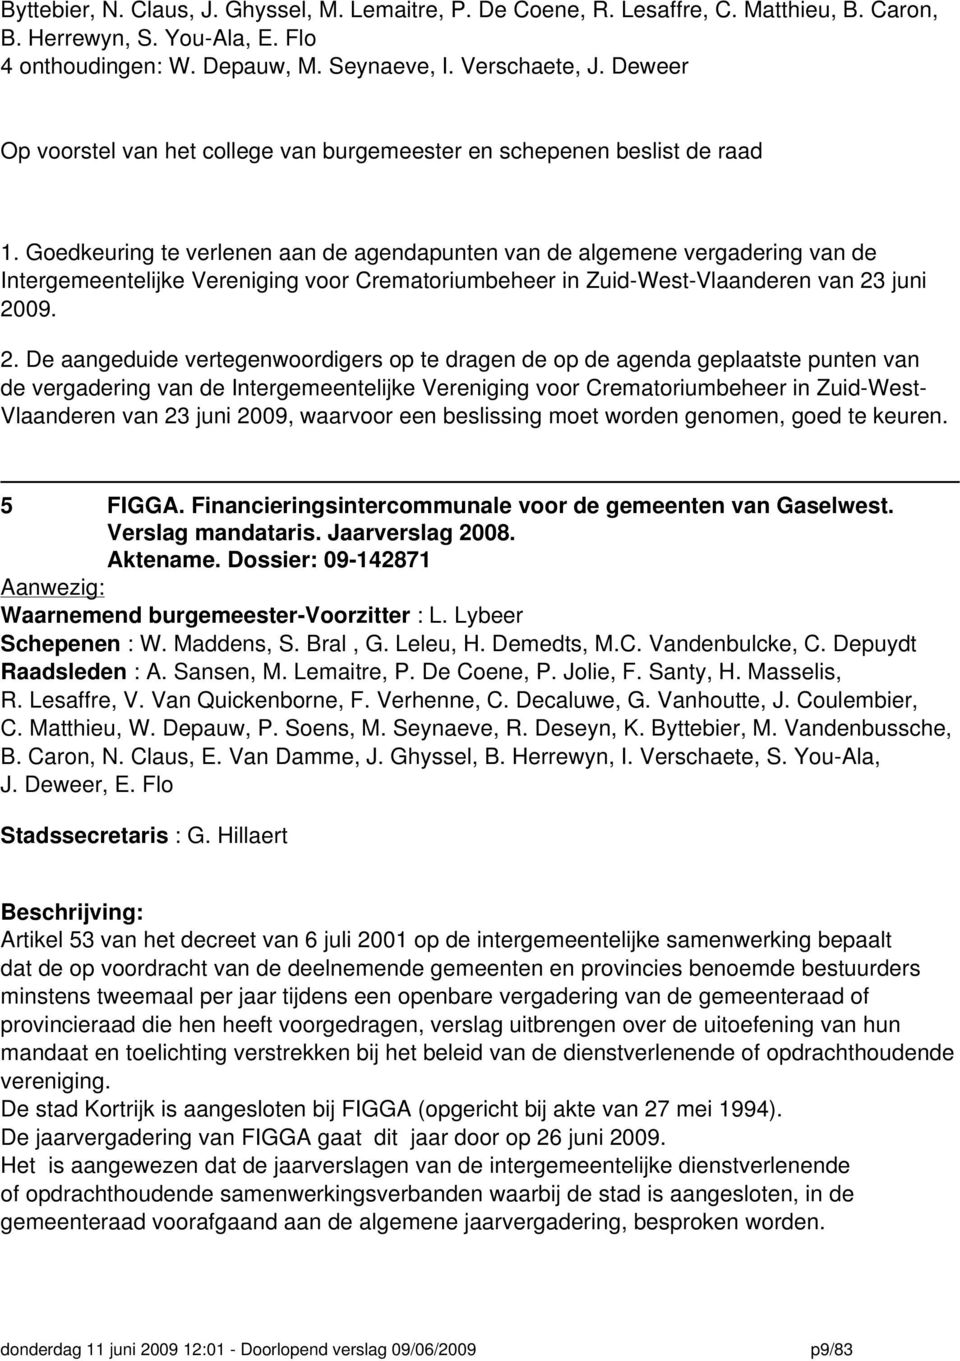 Goedkeuring te verlenen aan de agendapunten van de algemene vergadering van de Intergemeentelijke Vereniging voor Crematoriumbeheer in Zuid-West-Vlaanderen van 23